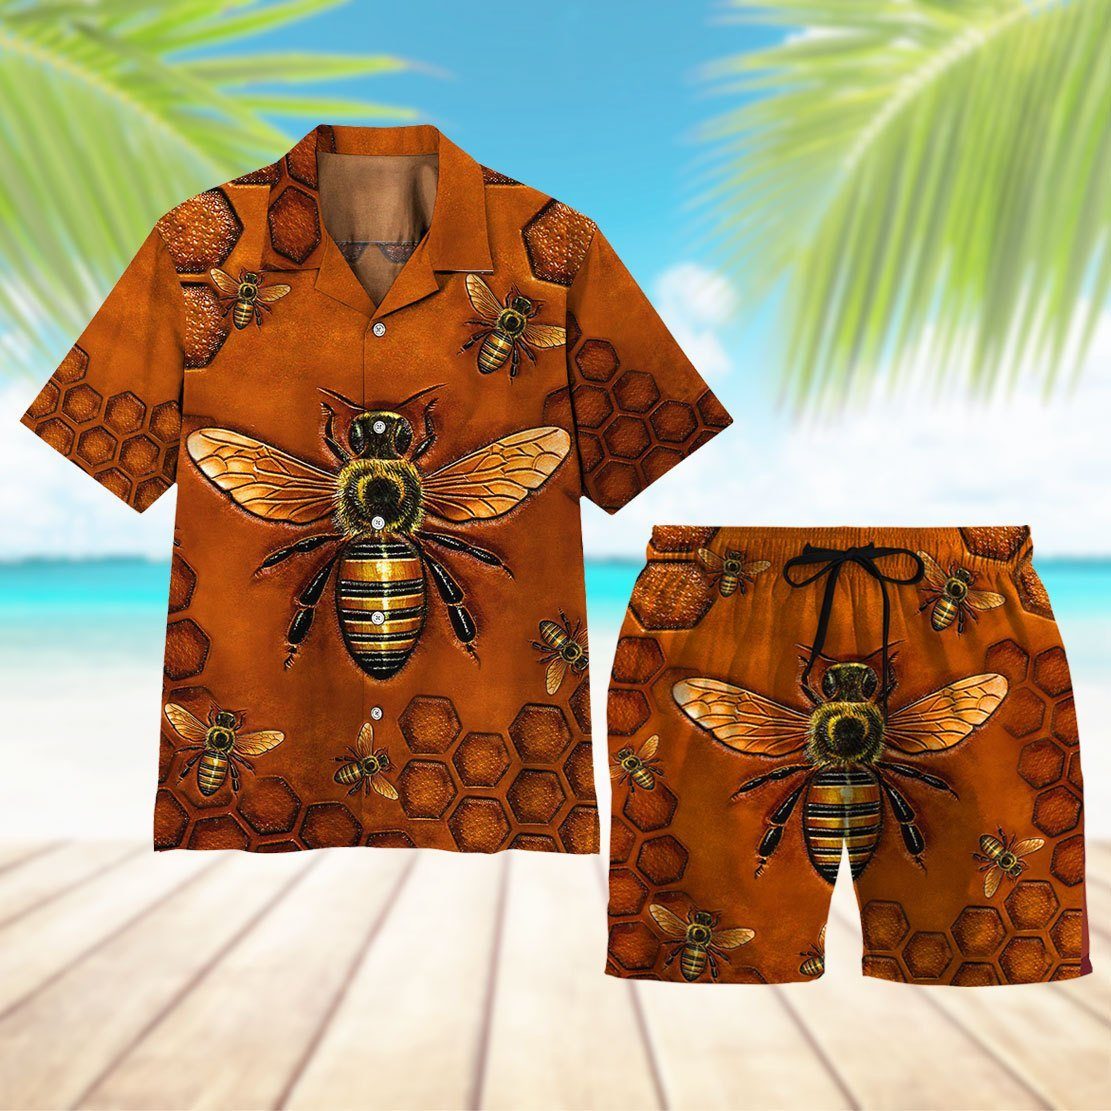 Gearhuman 3D Bee Beach Short ZZ0706211 Men Shorts 